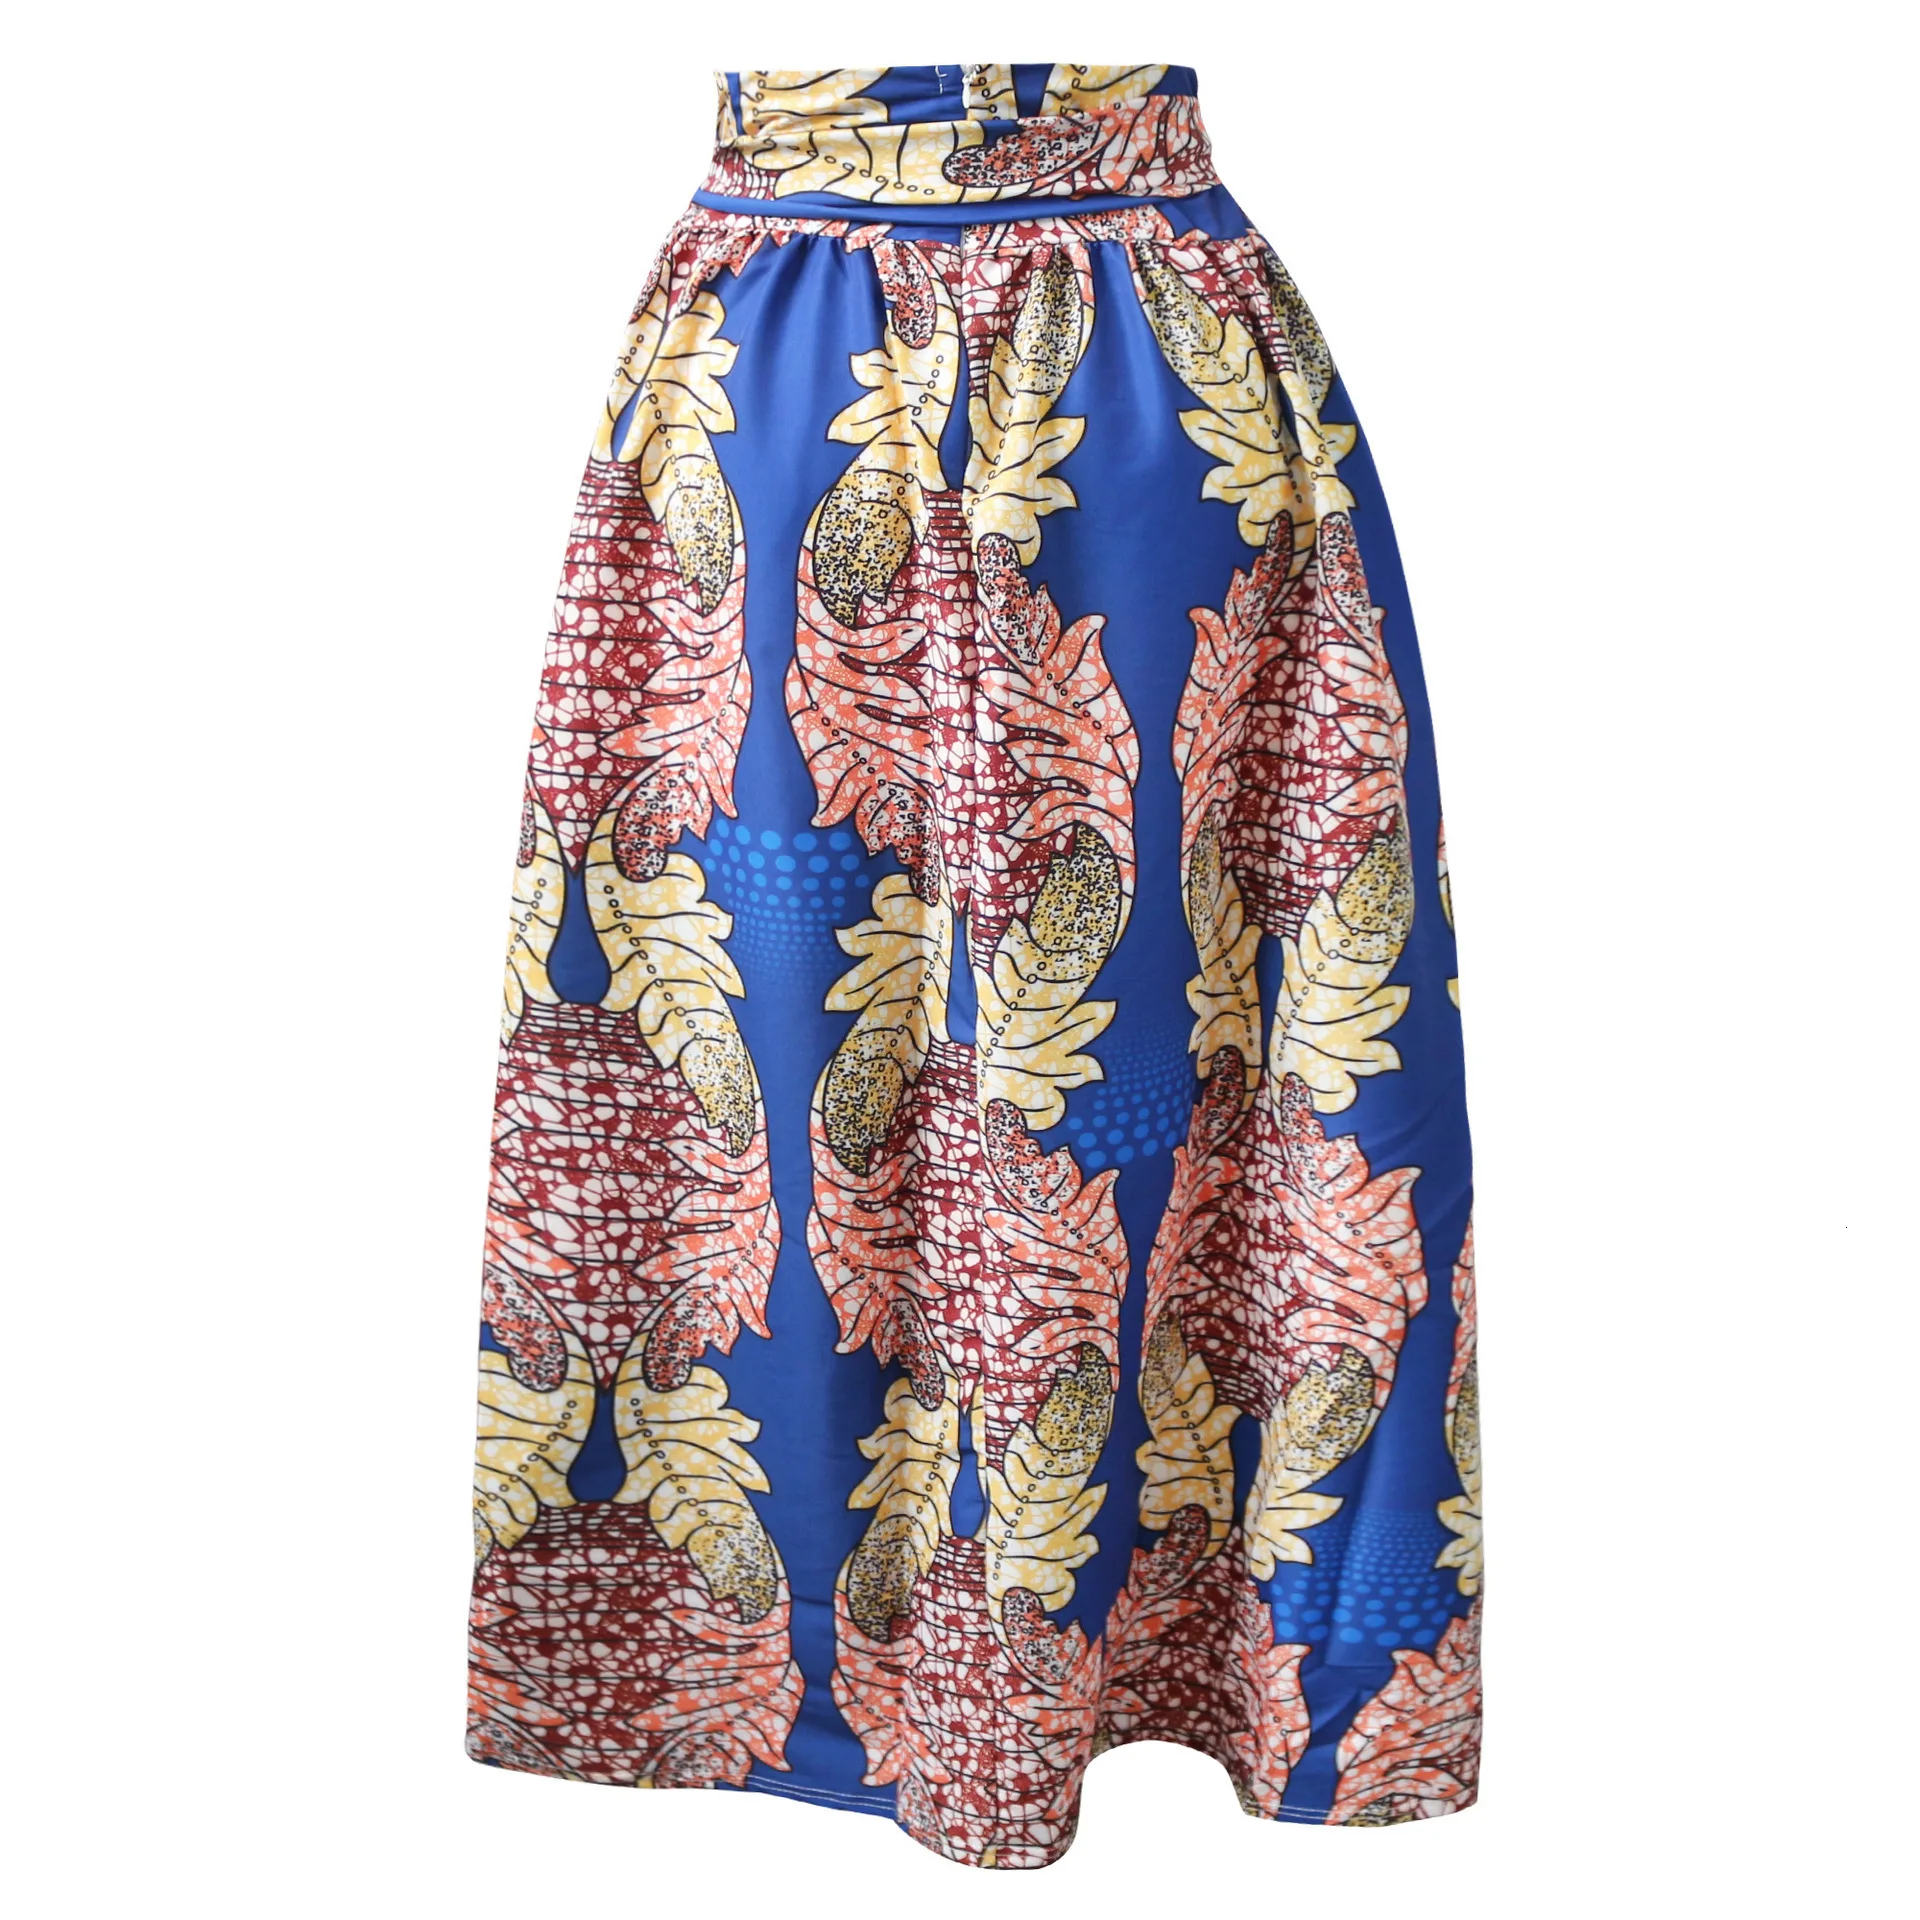 Разноцветная юбка в африканском стиле с принтом «нация ветра Джой тотемс», 4 цвета, одежда с 3d принтом, большие размеры S 5XL, длинные